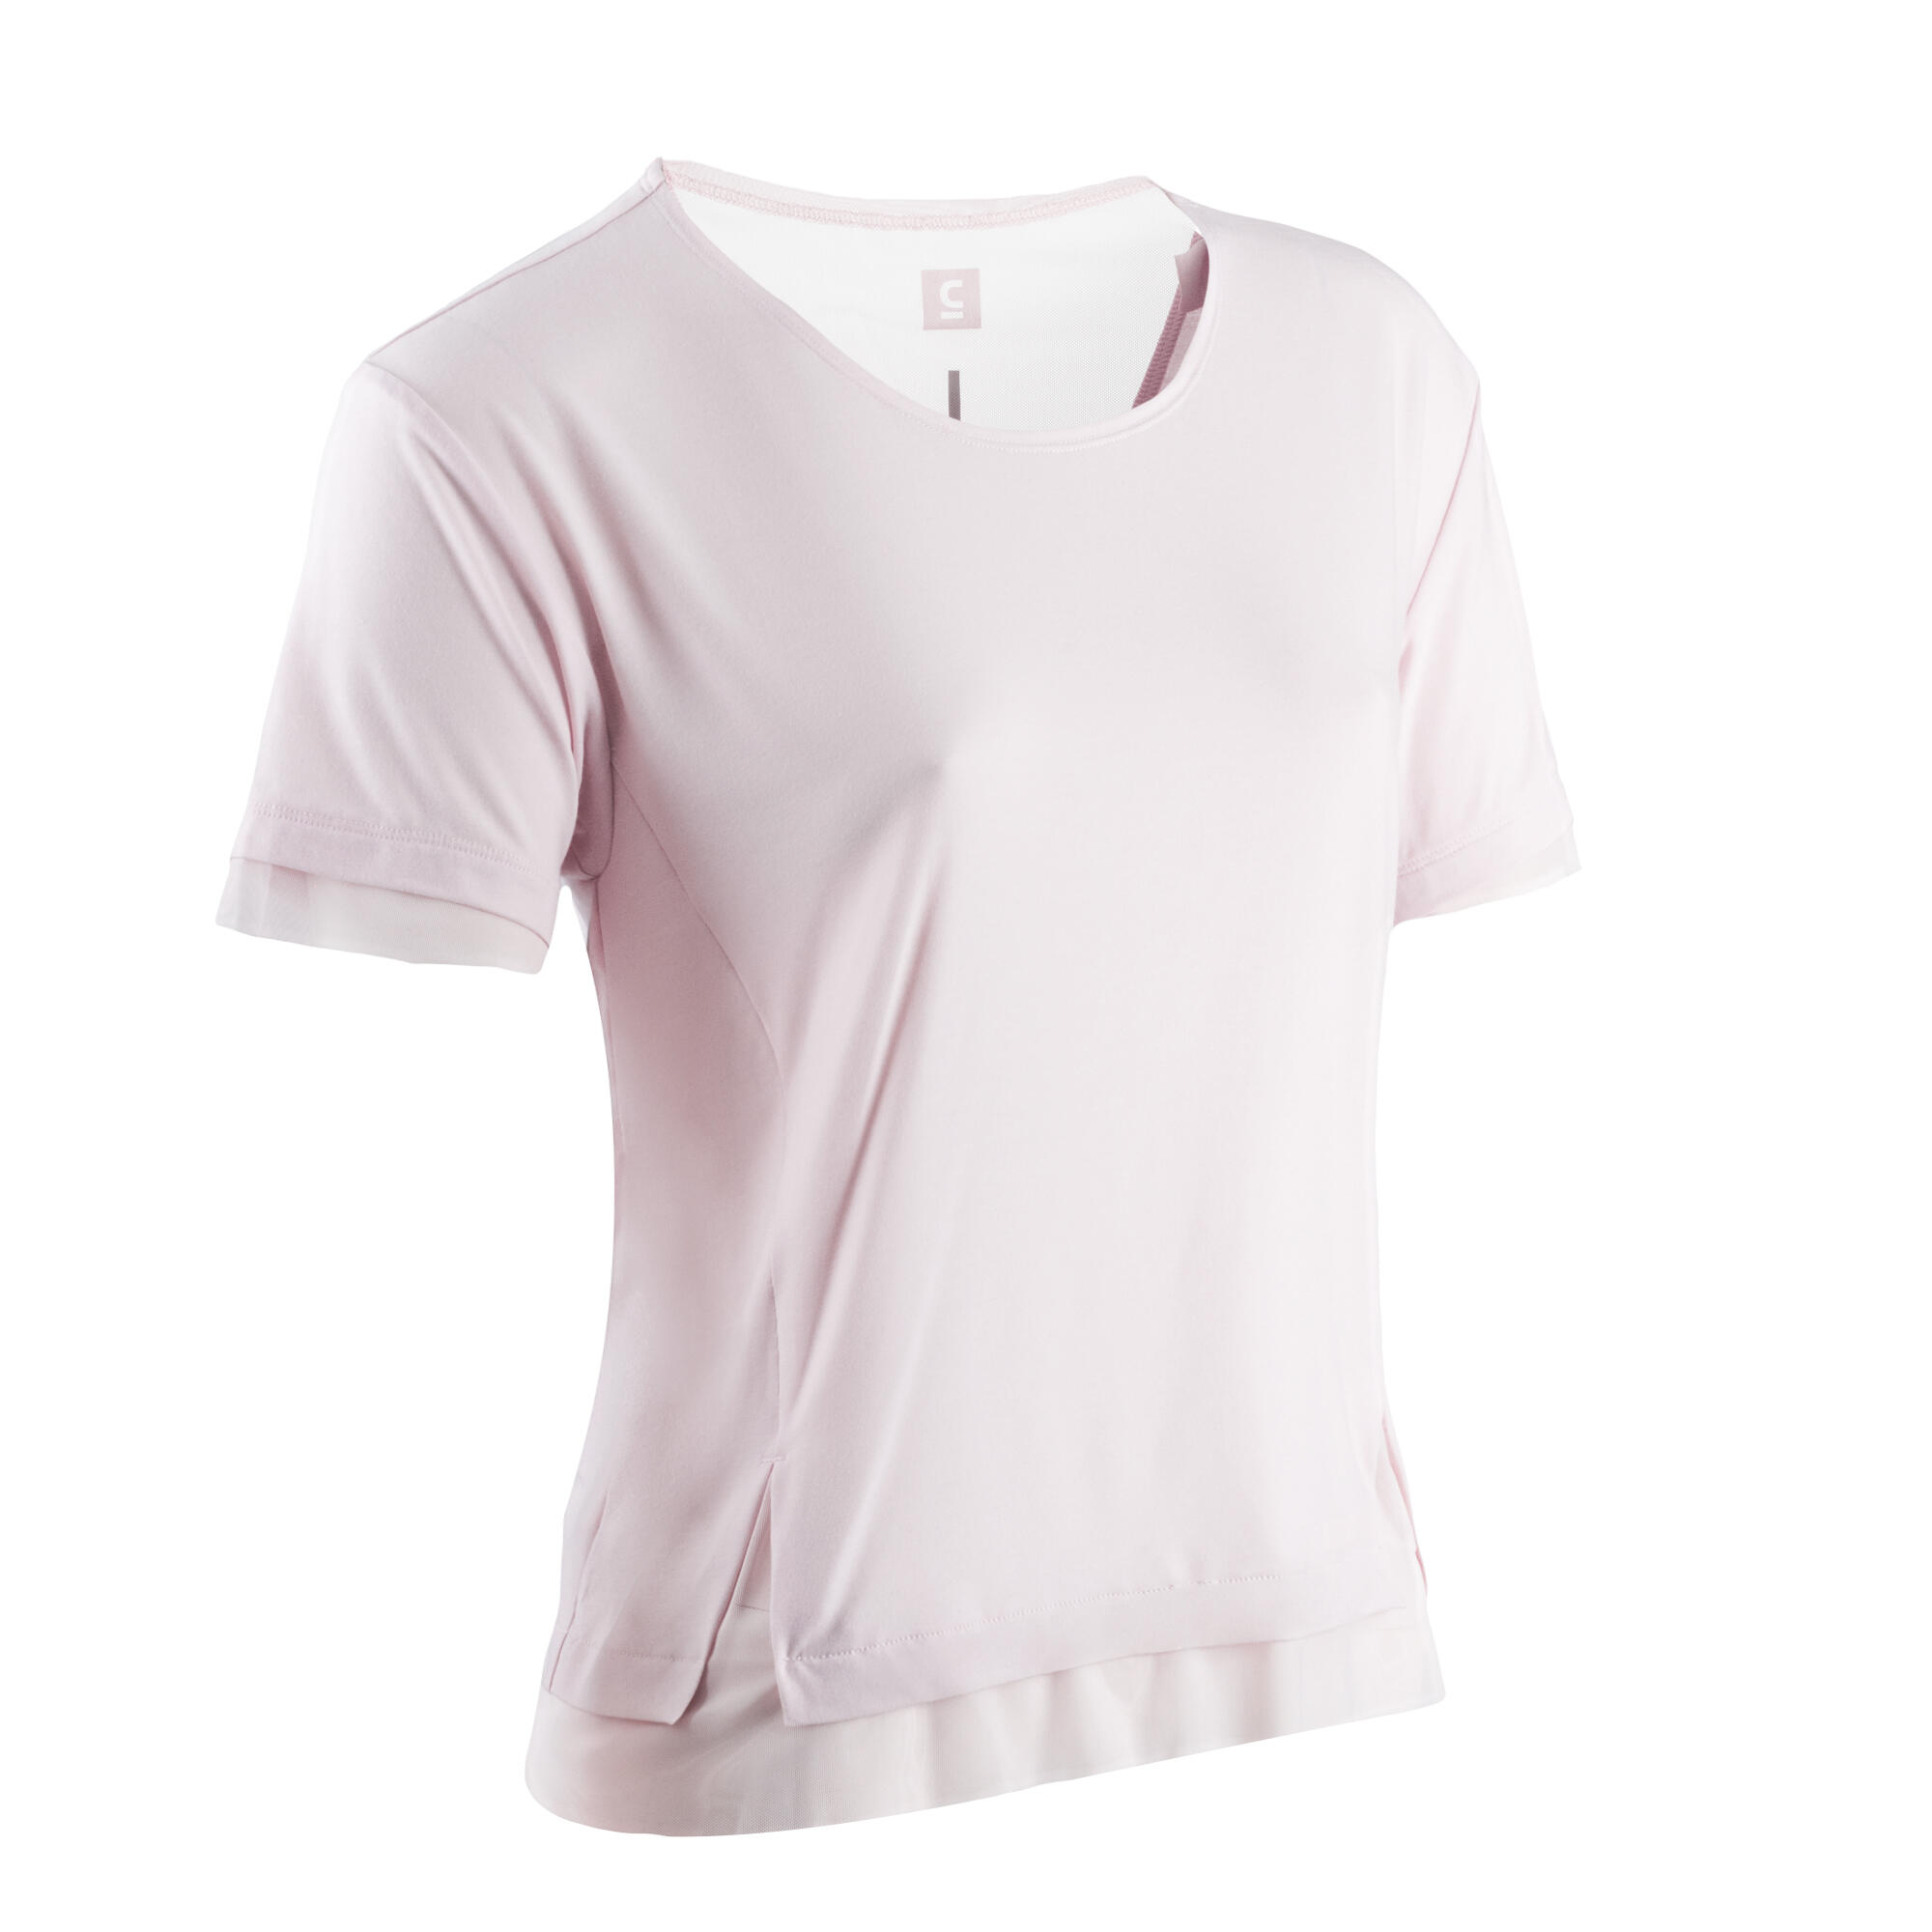 KALENJI Feel Women's Running Breathable Short-Sleeved T-shirt - pink